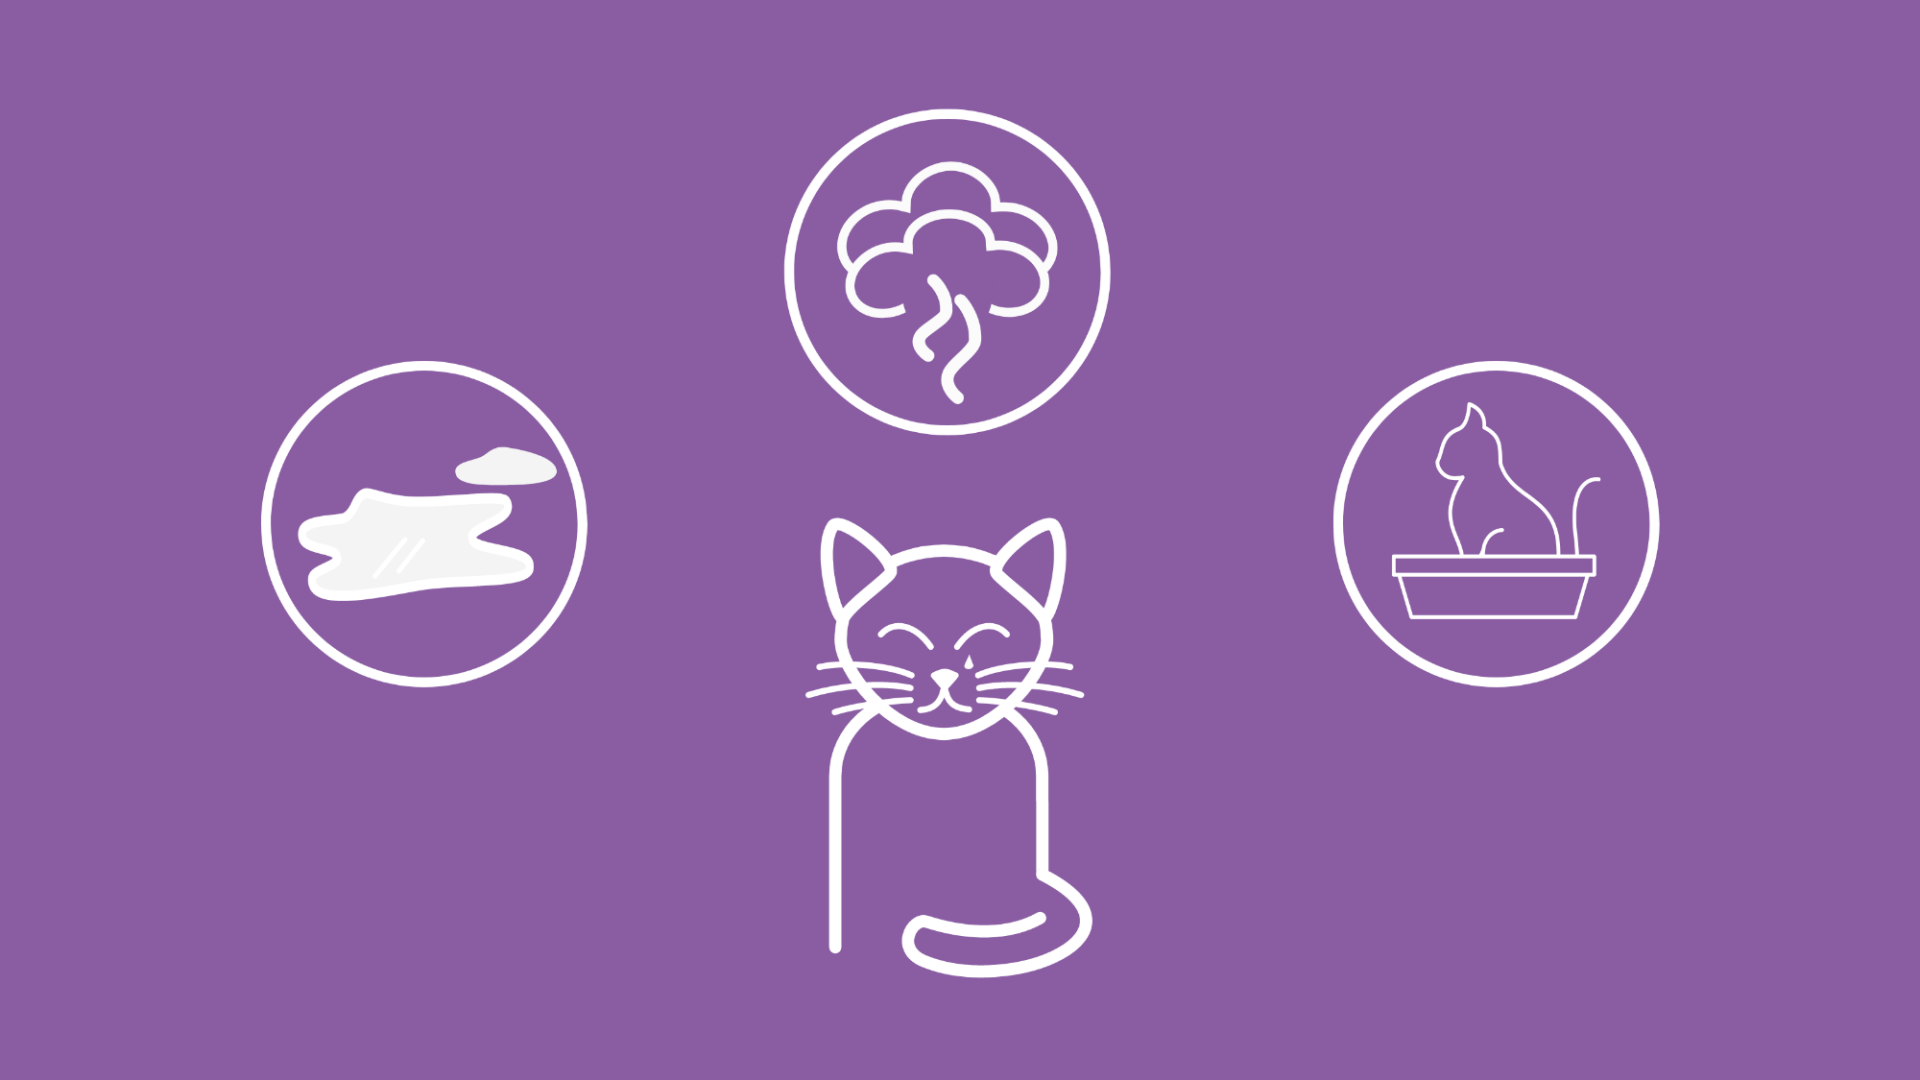 Um eine Katze herum sind Symptome einer Blasenentzündung abgebildet.